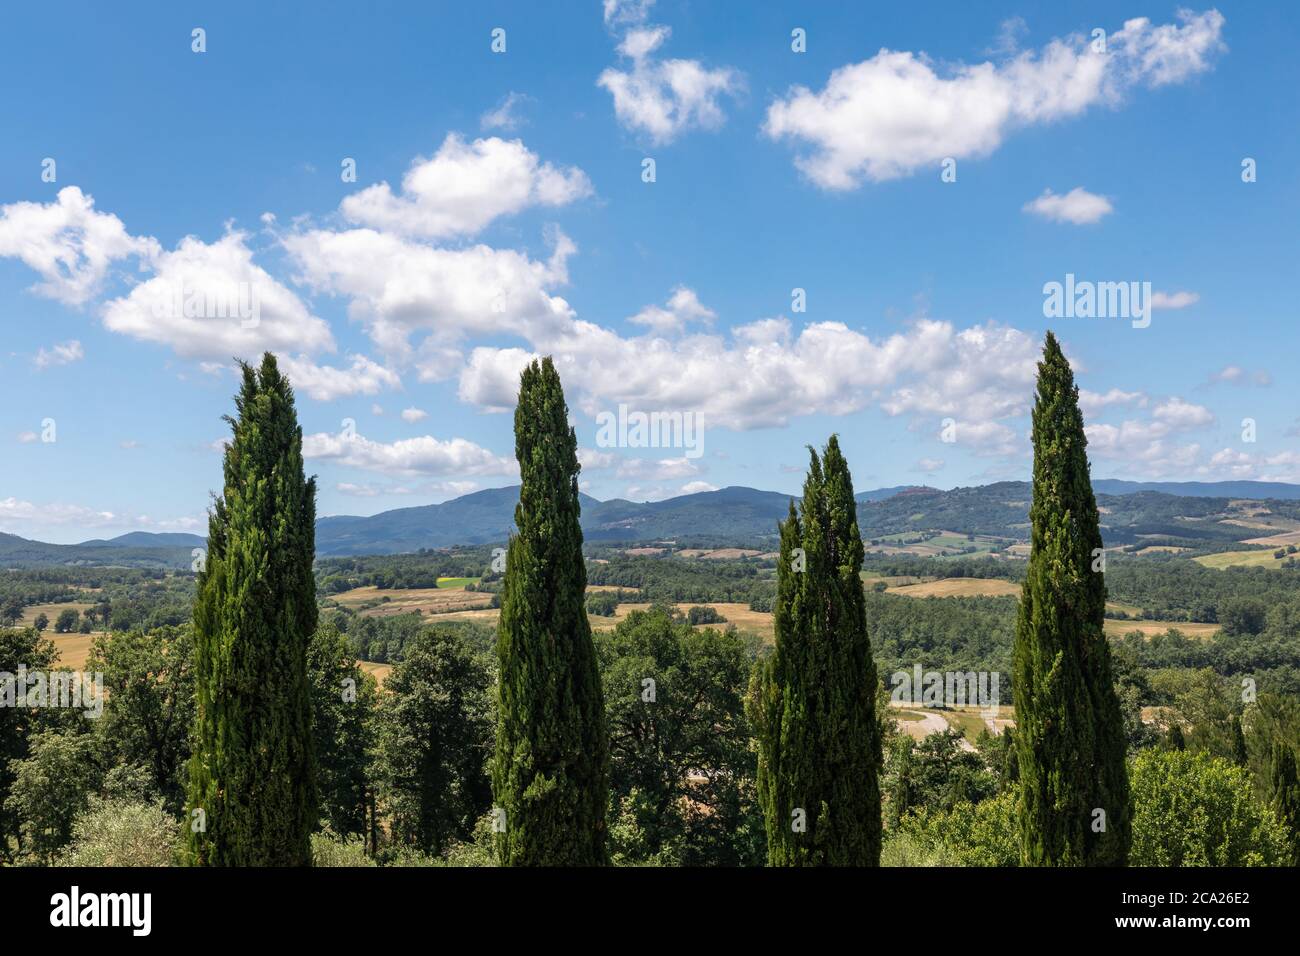 Iconico paesaggio tuscanico, con le corone di quattro cipressi simmetricamente allineate, sotto un cielo blu con nuvole soffici Foto Stock